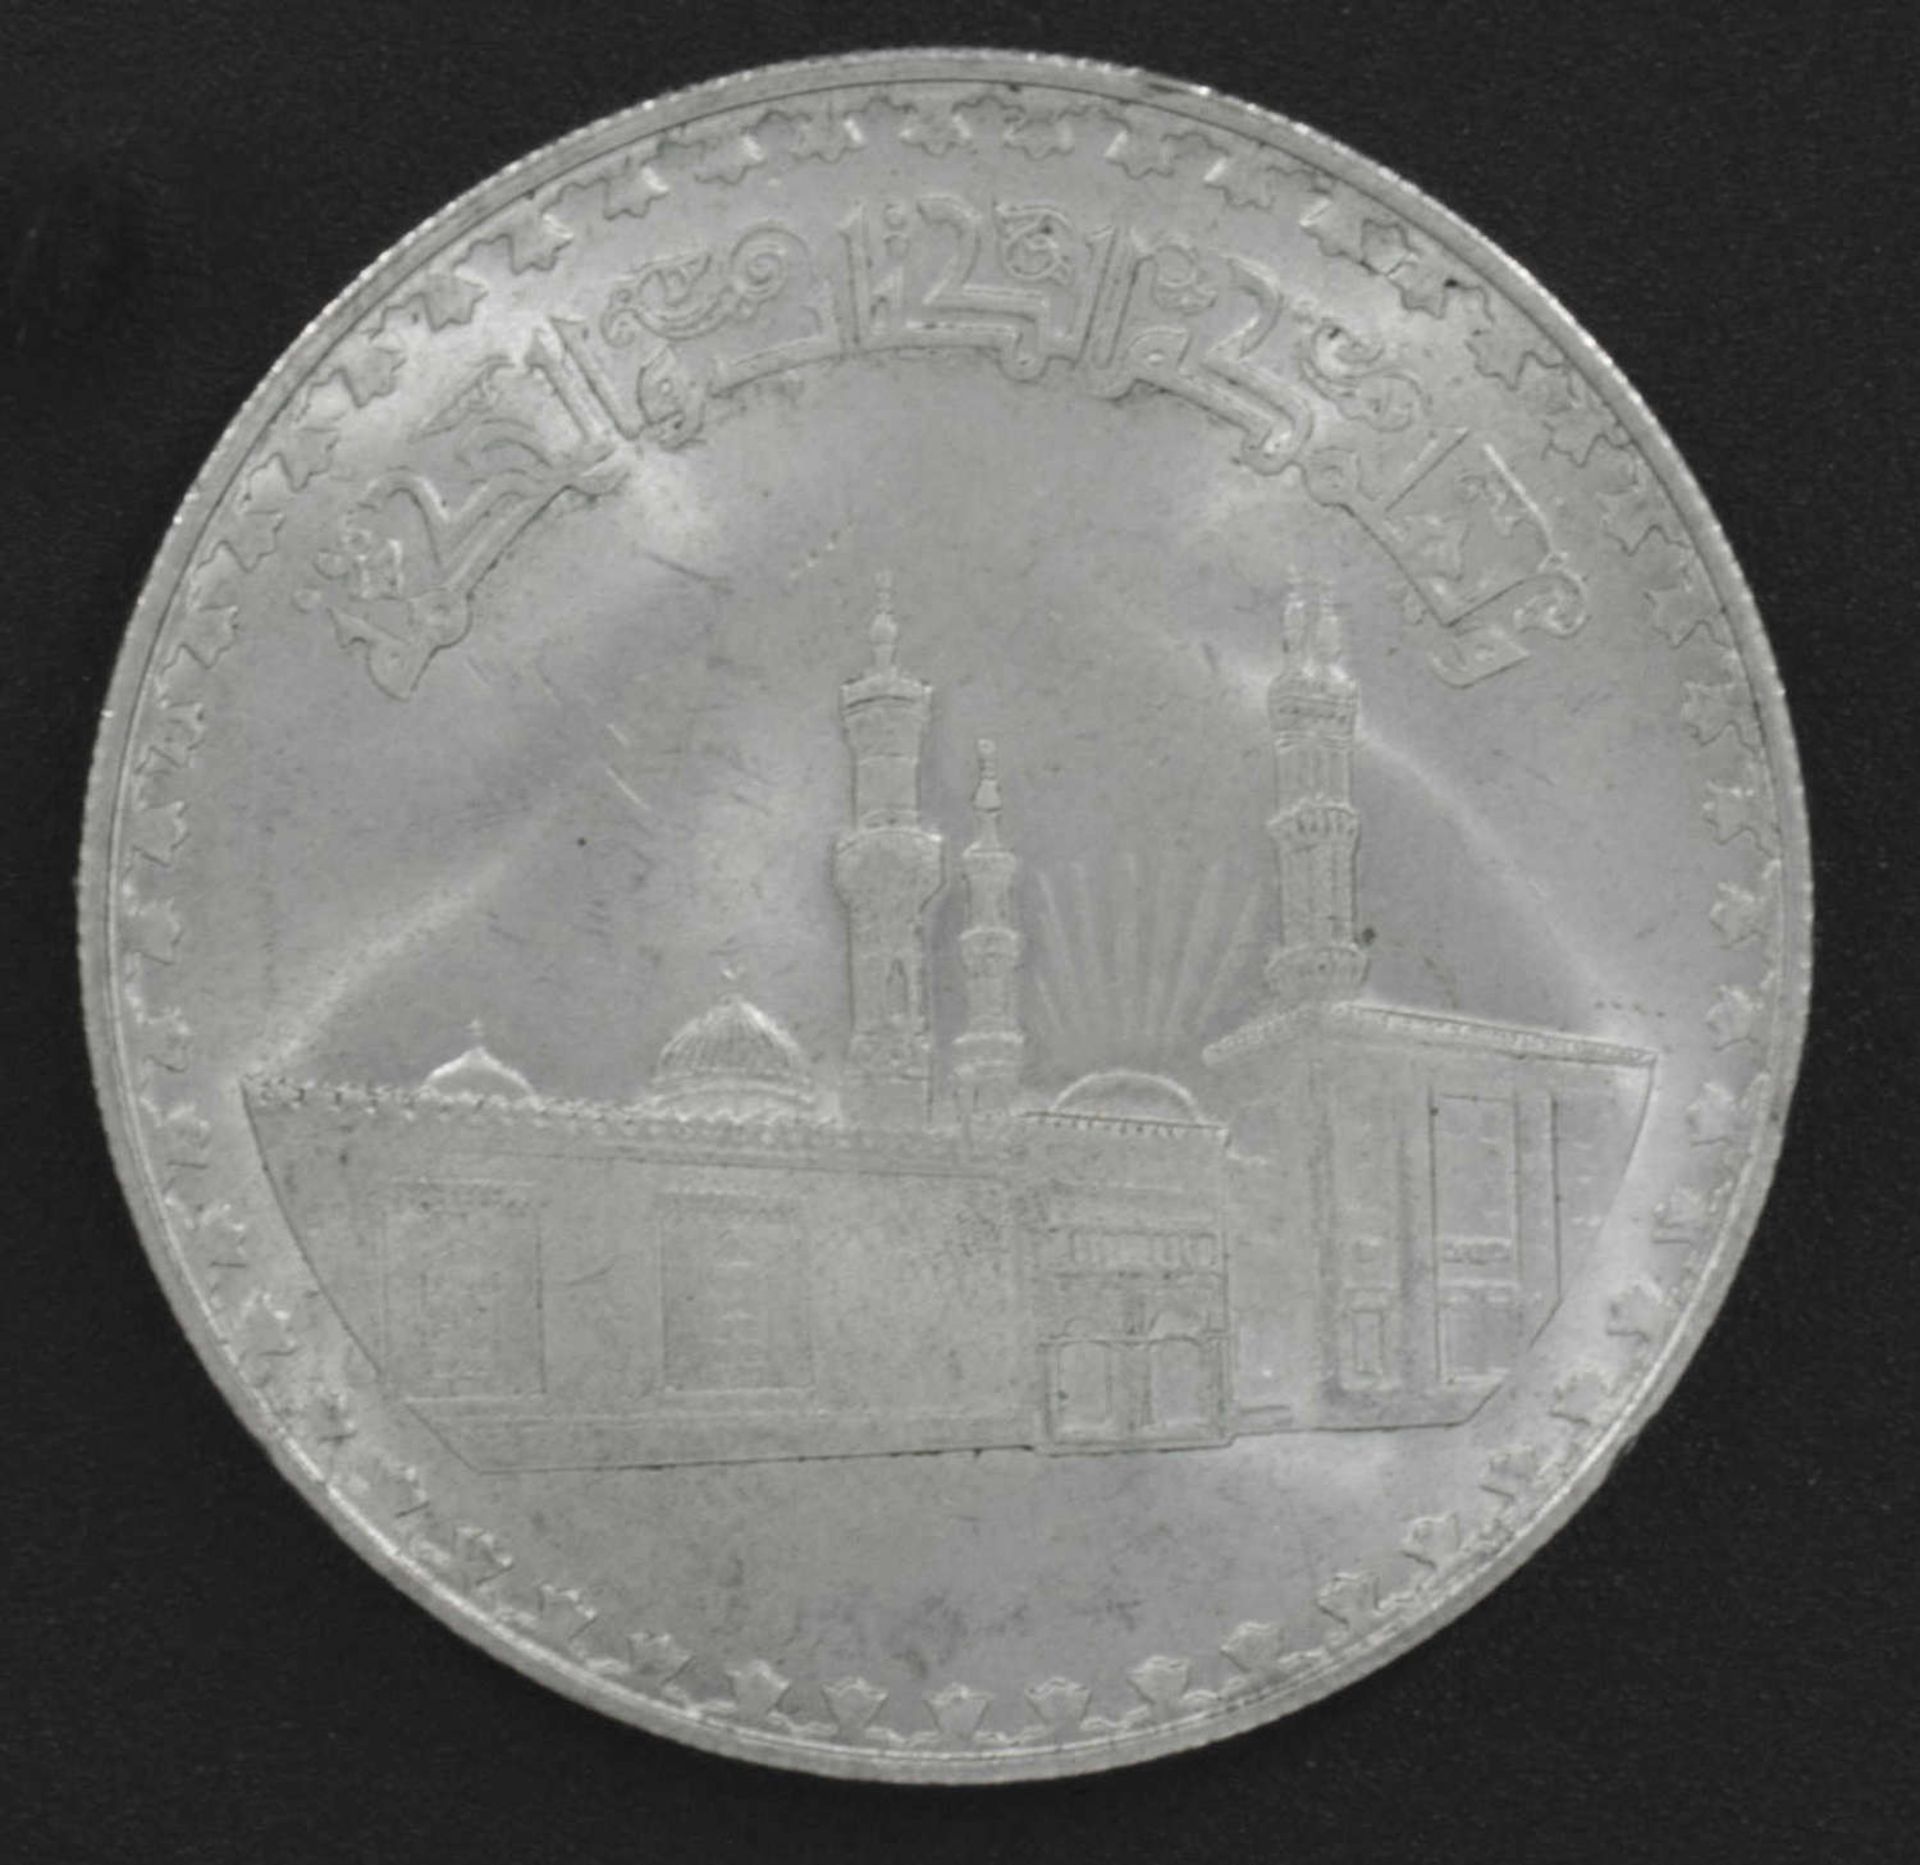 Egypt 1970, 1 pound - silver coin, "Al Azhar Mosque". Silver 720. Grade: VZ.